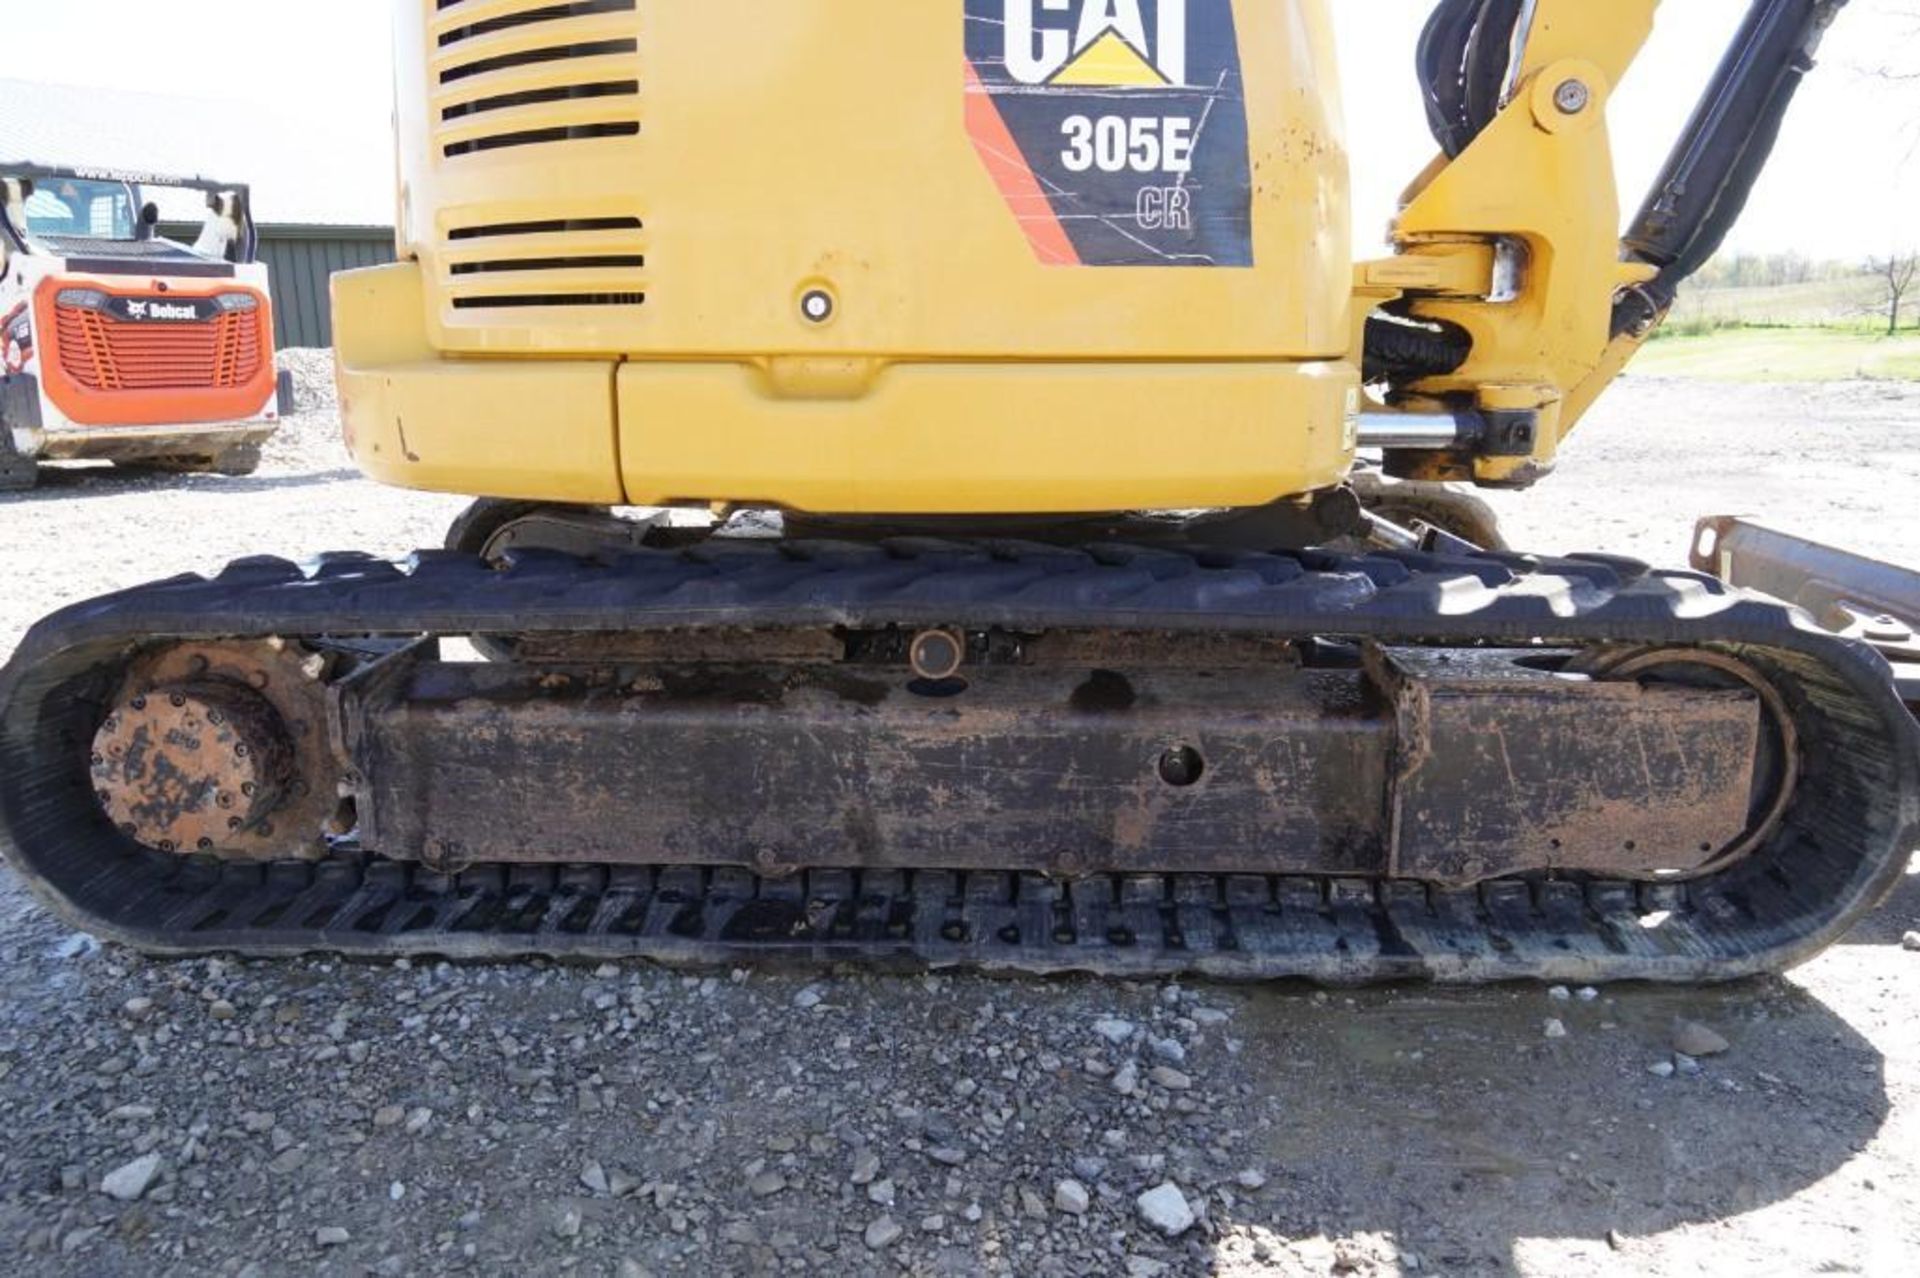 2012 Caterpillar 305E Excavator - Image 26 of 56